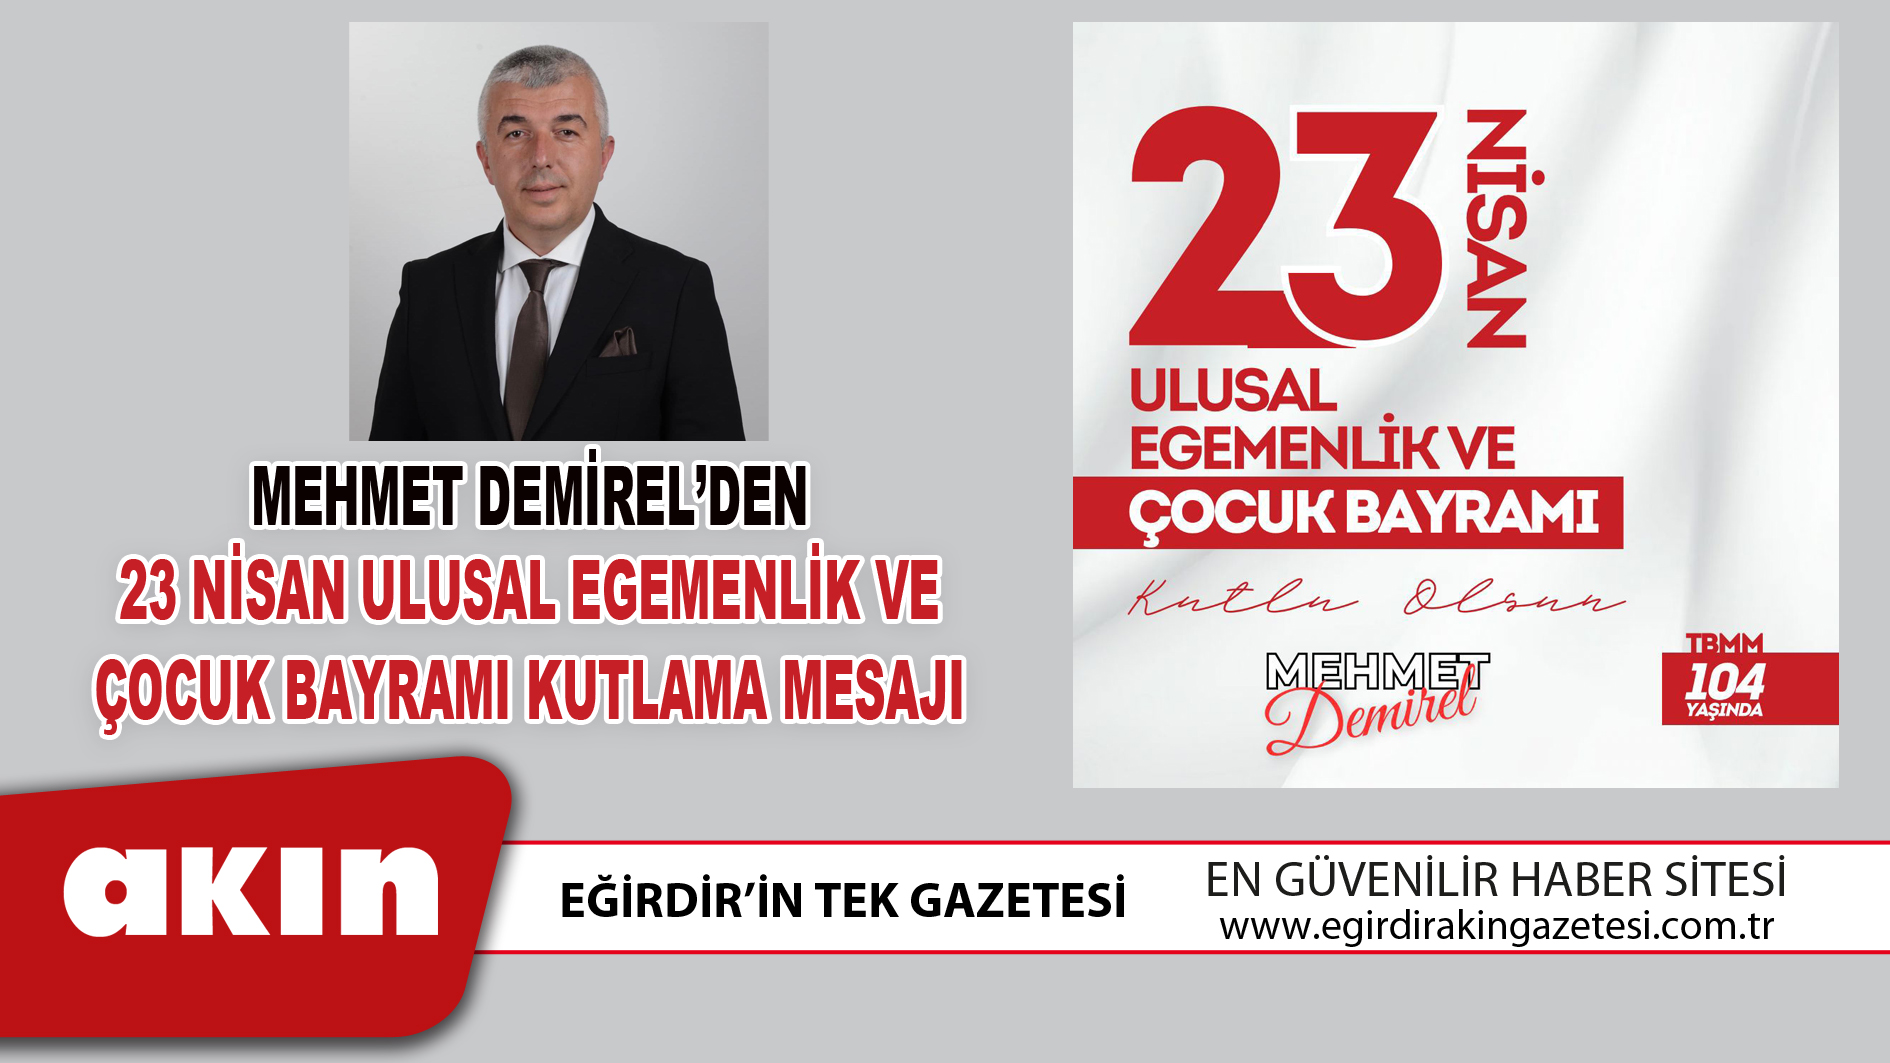 Mehmet Demirel’den 23 Nisan Ulusal Egemenlik Ve Çocuk Bayramı Kutlama Mesajı